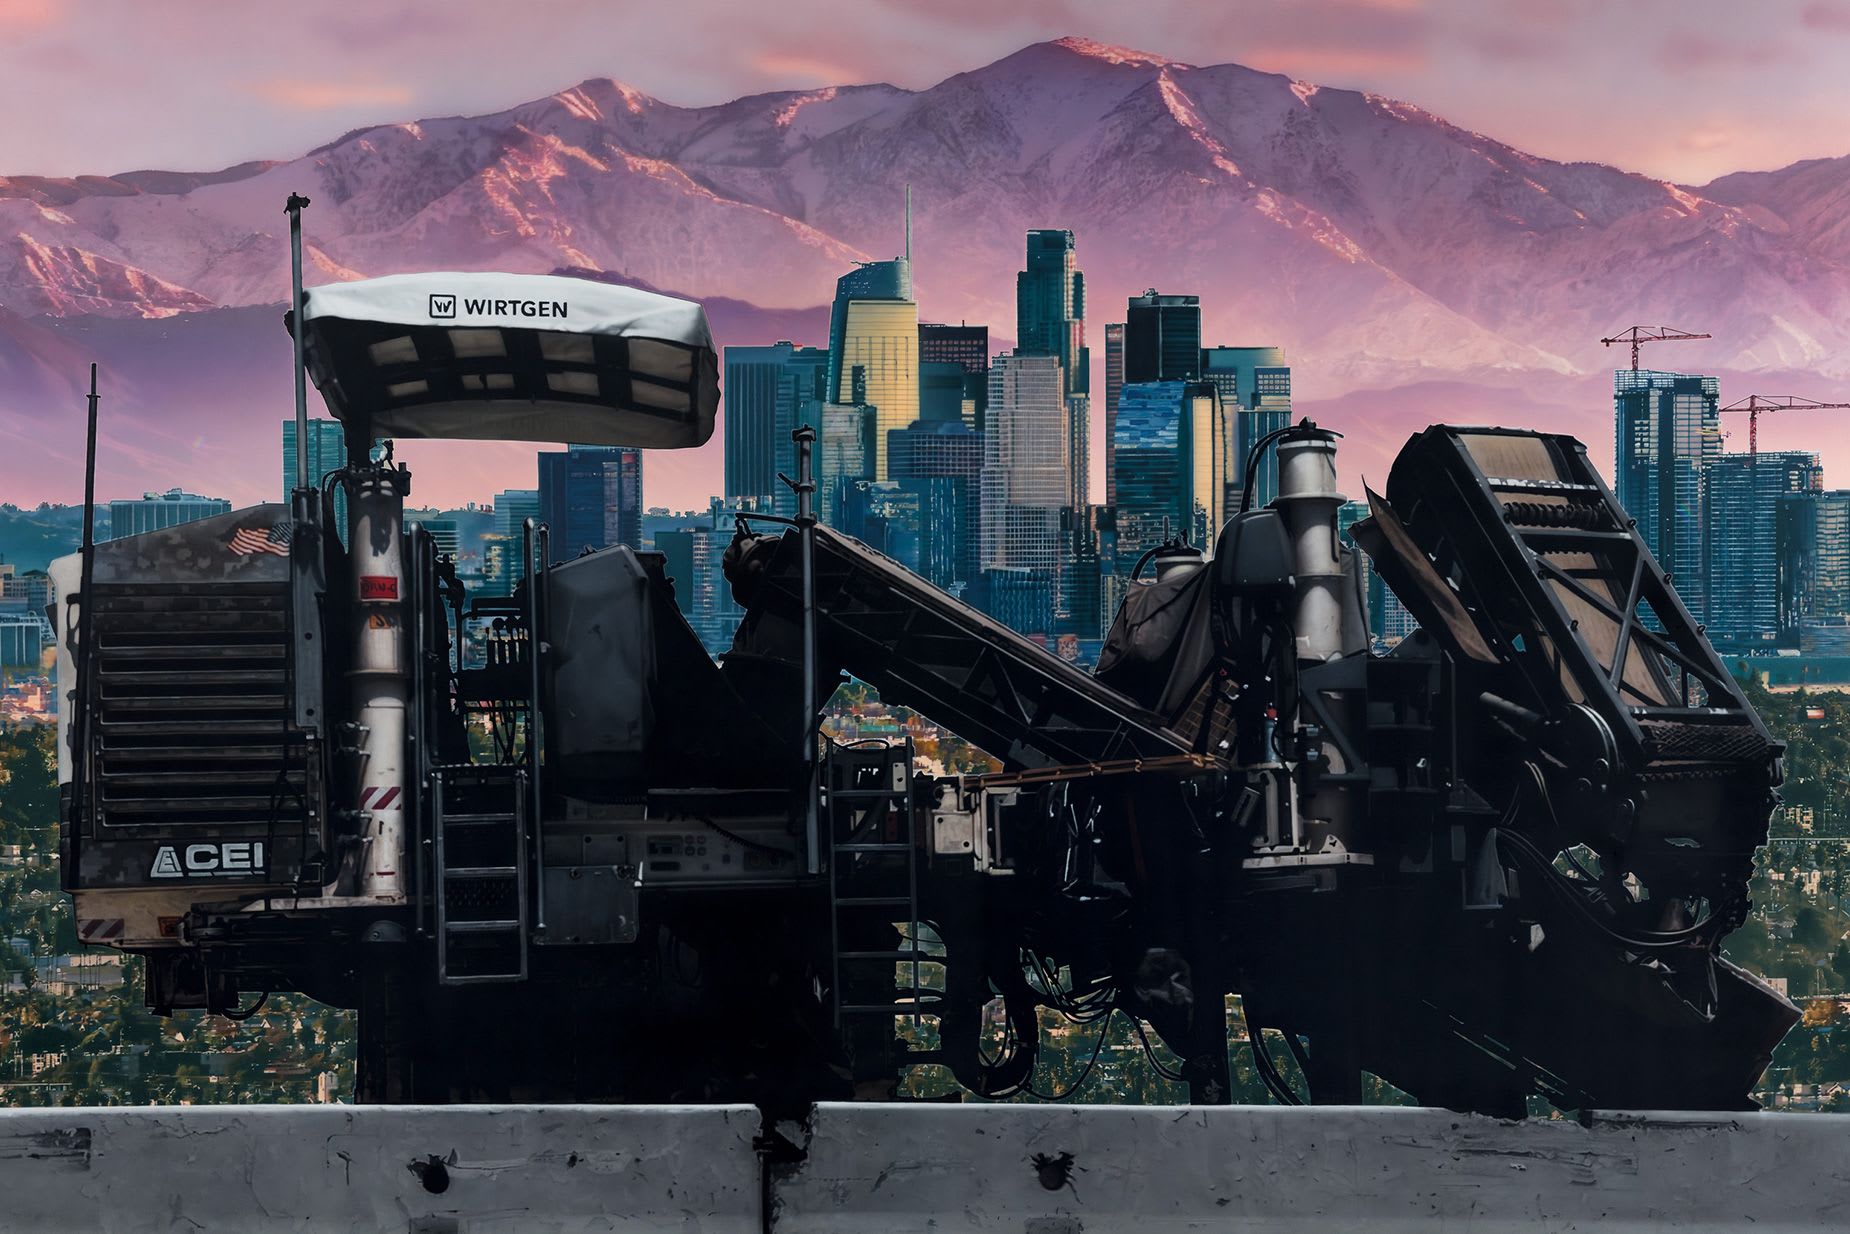 لوحات ساير غوميز تظهر لوس أنجلوس "كما هي"